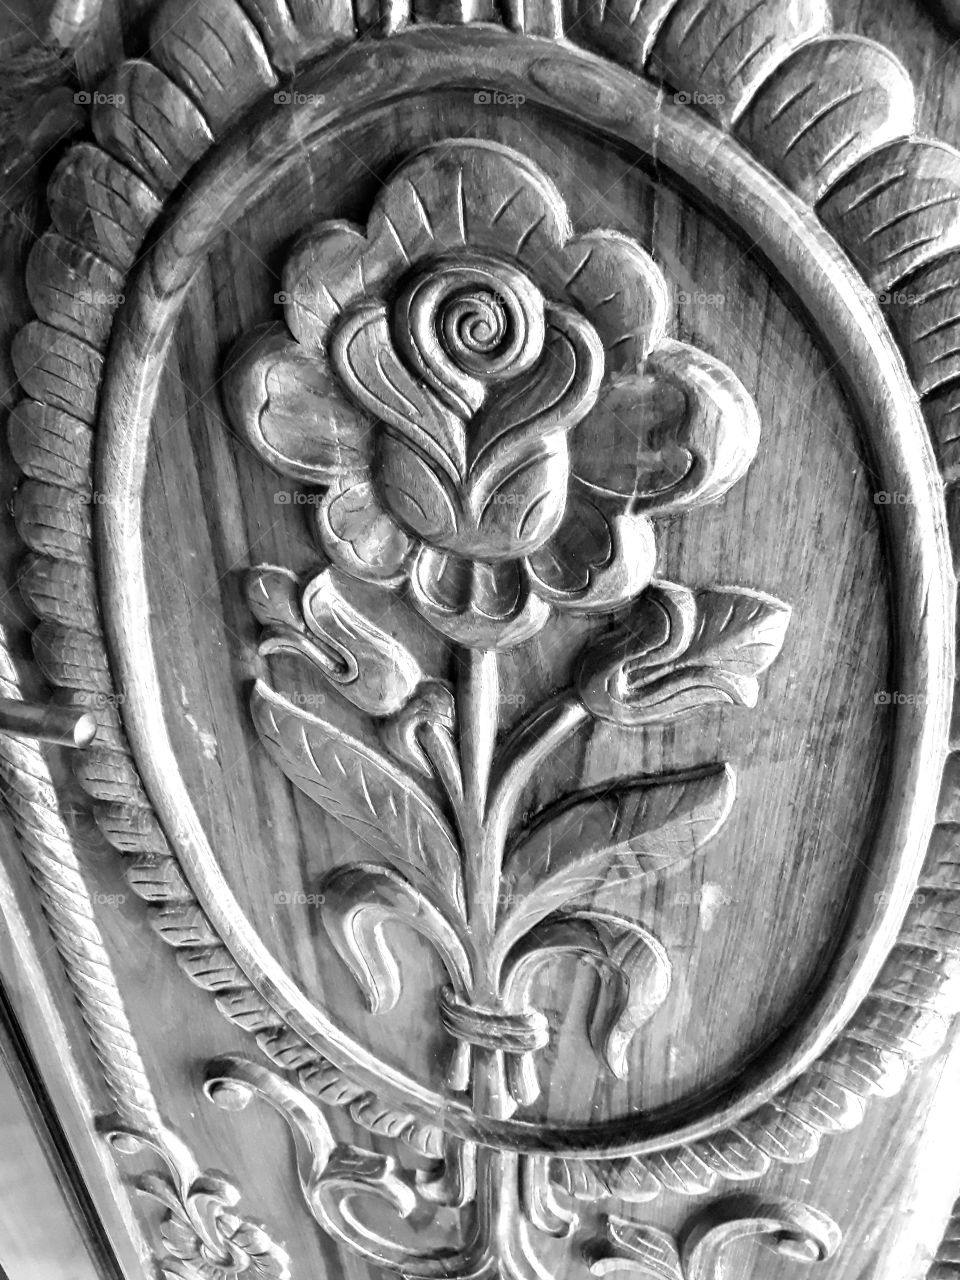 Rose flower design on a wooden entrance door